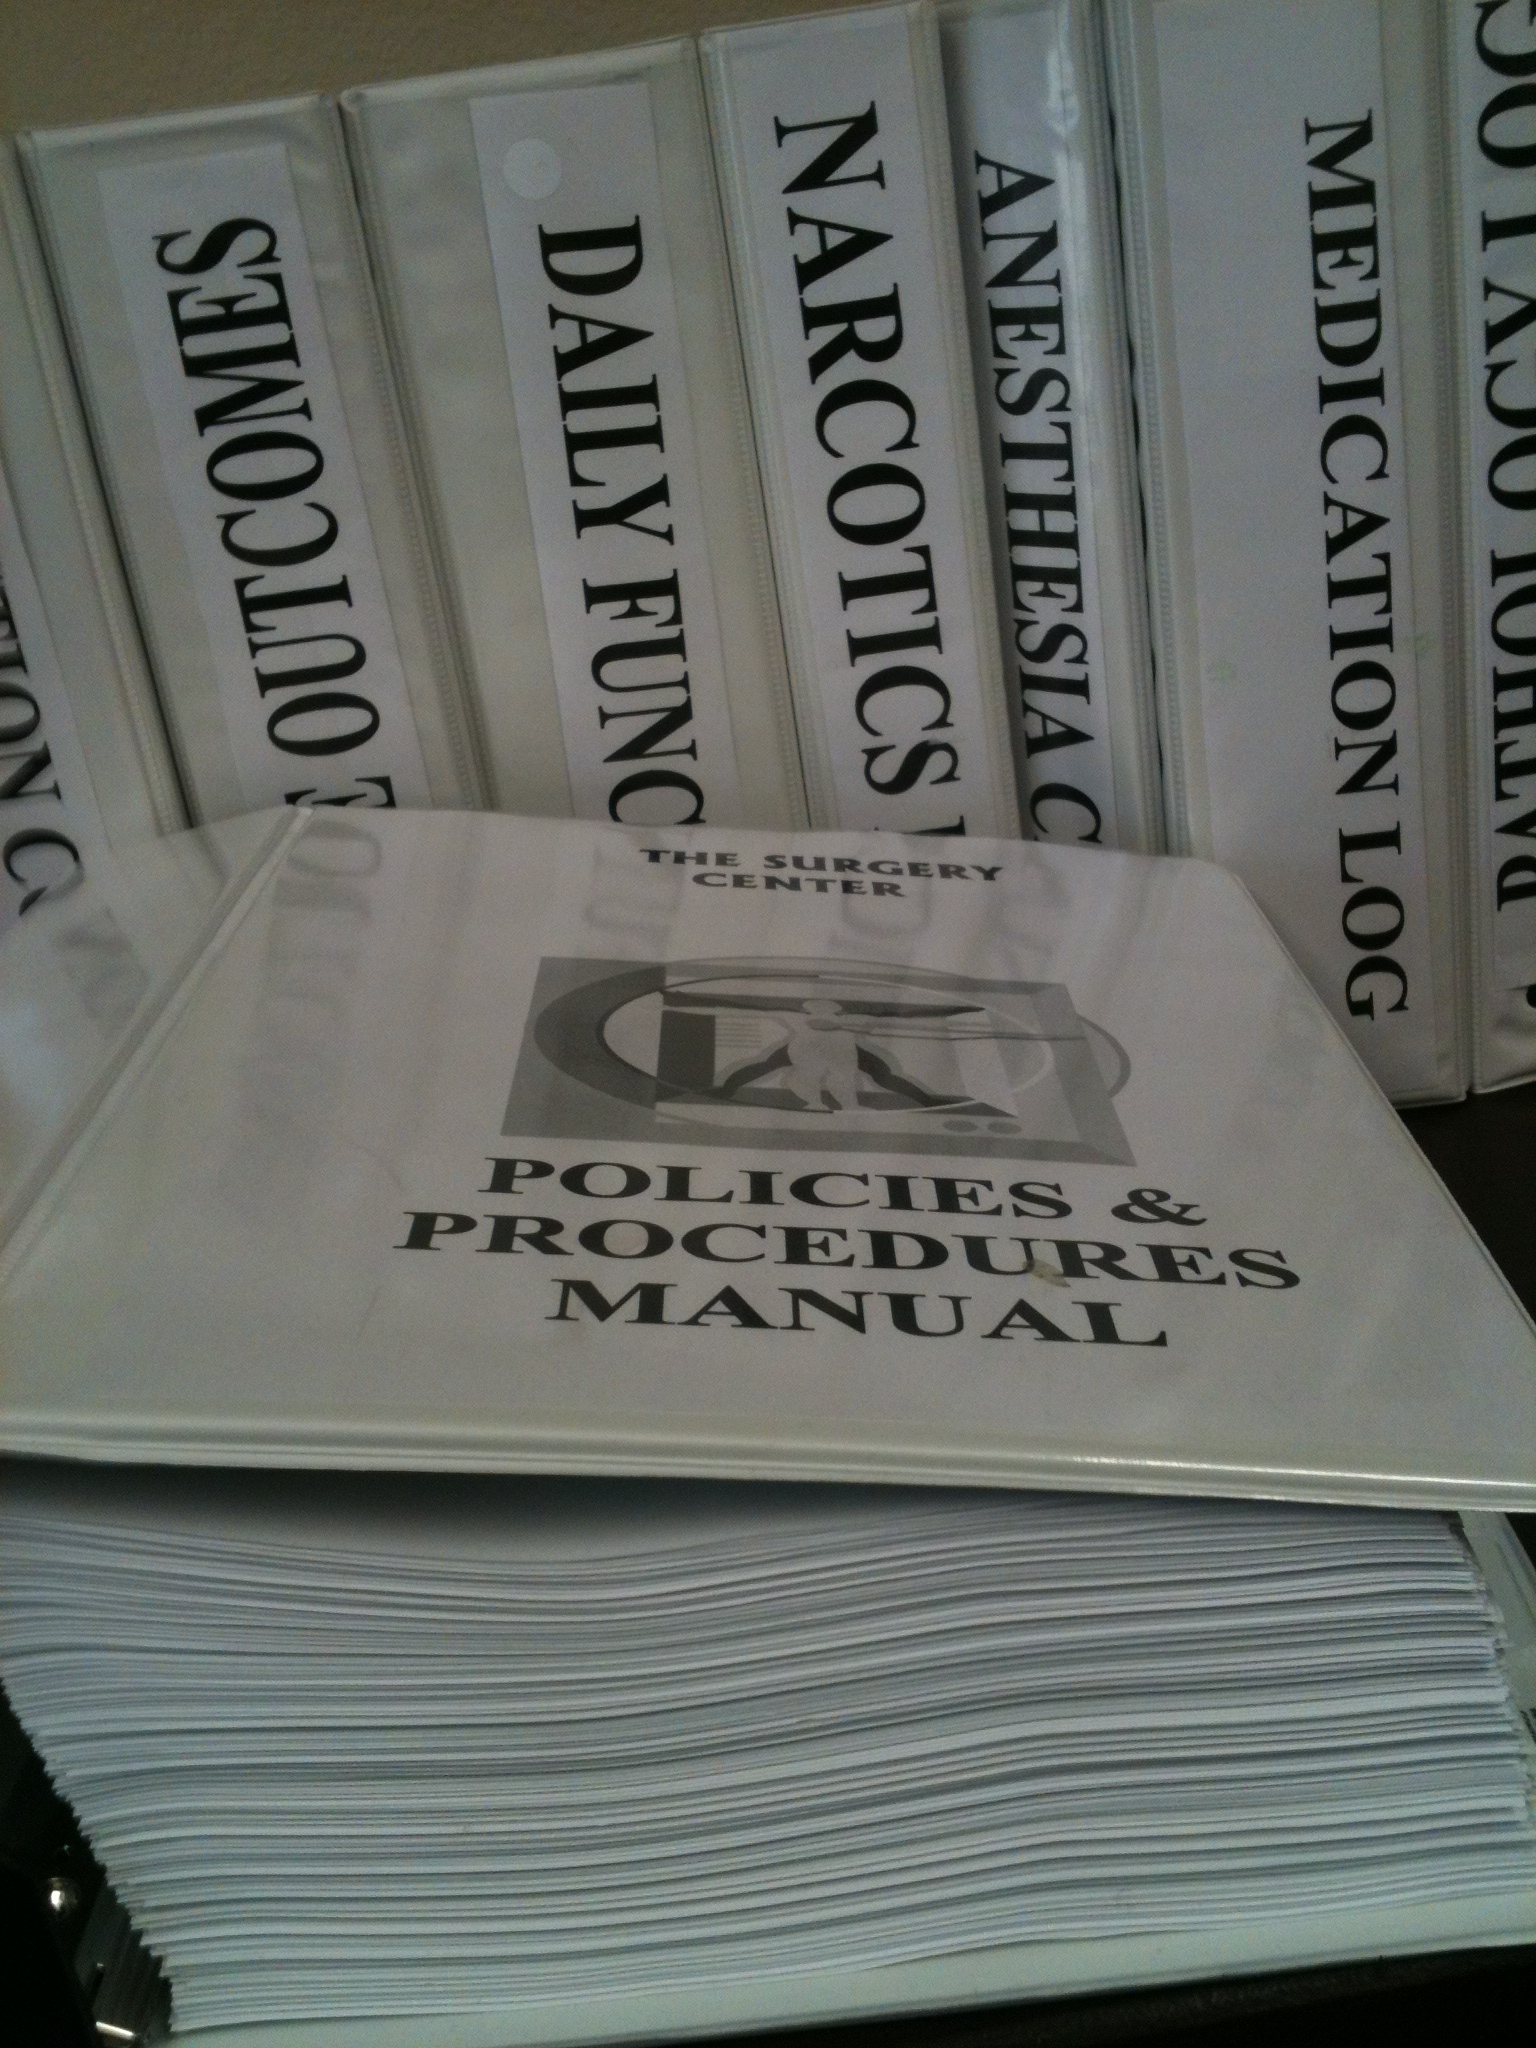 ASC Policies & Procedures Manual